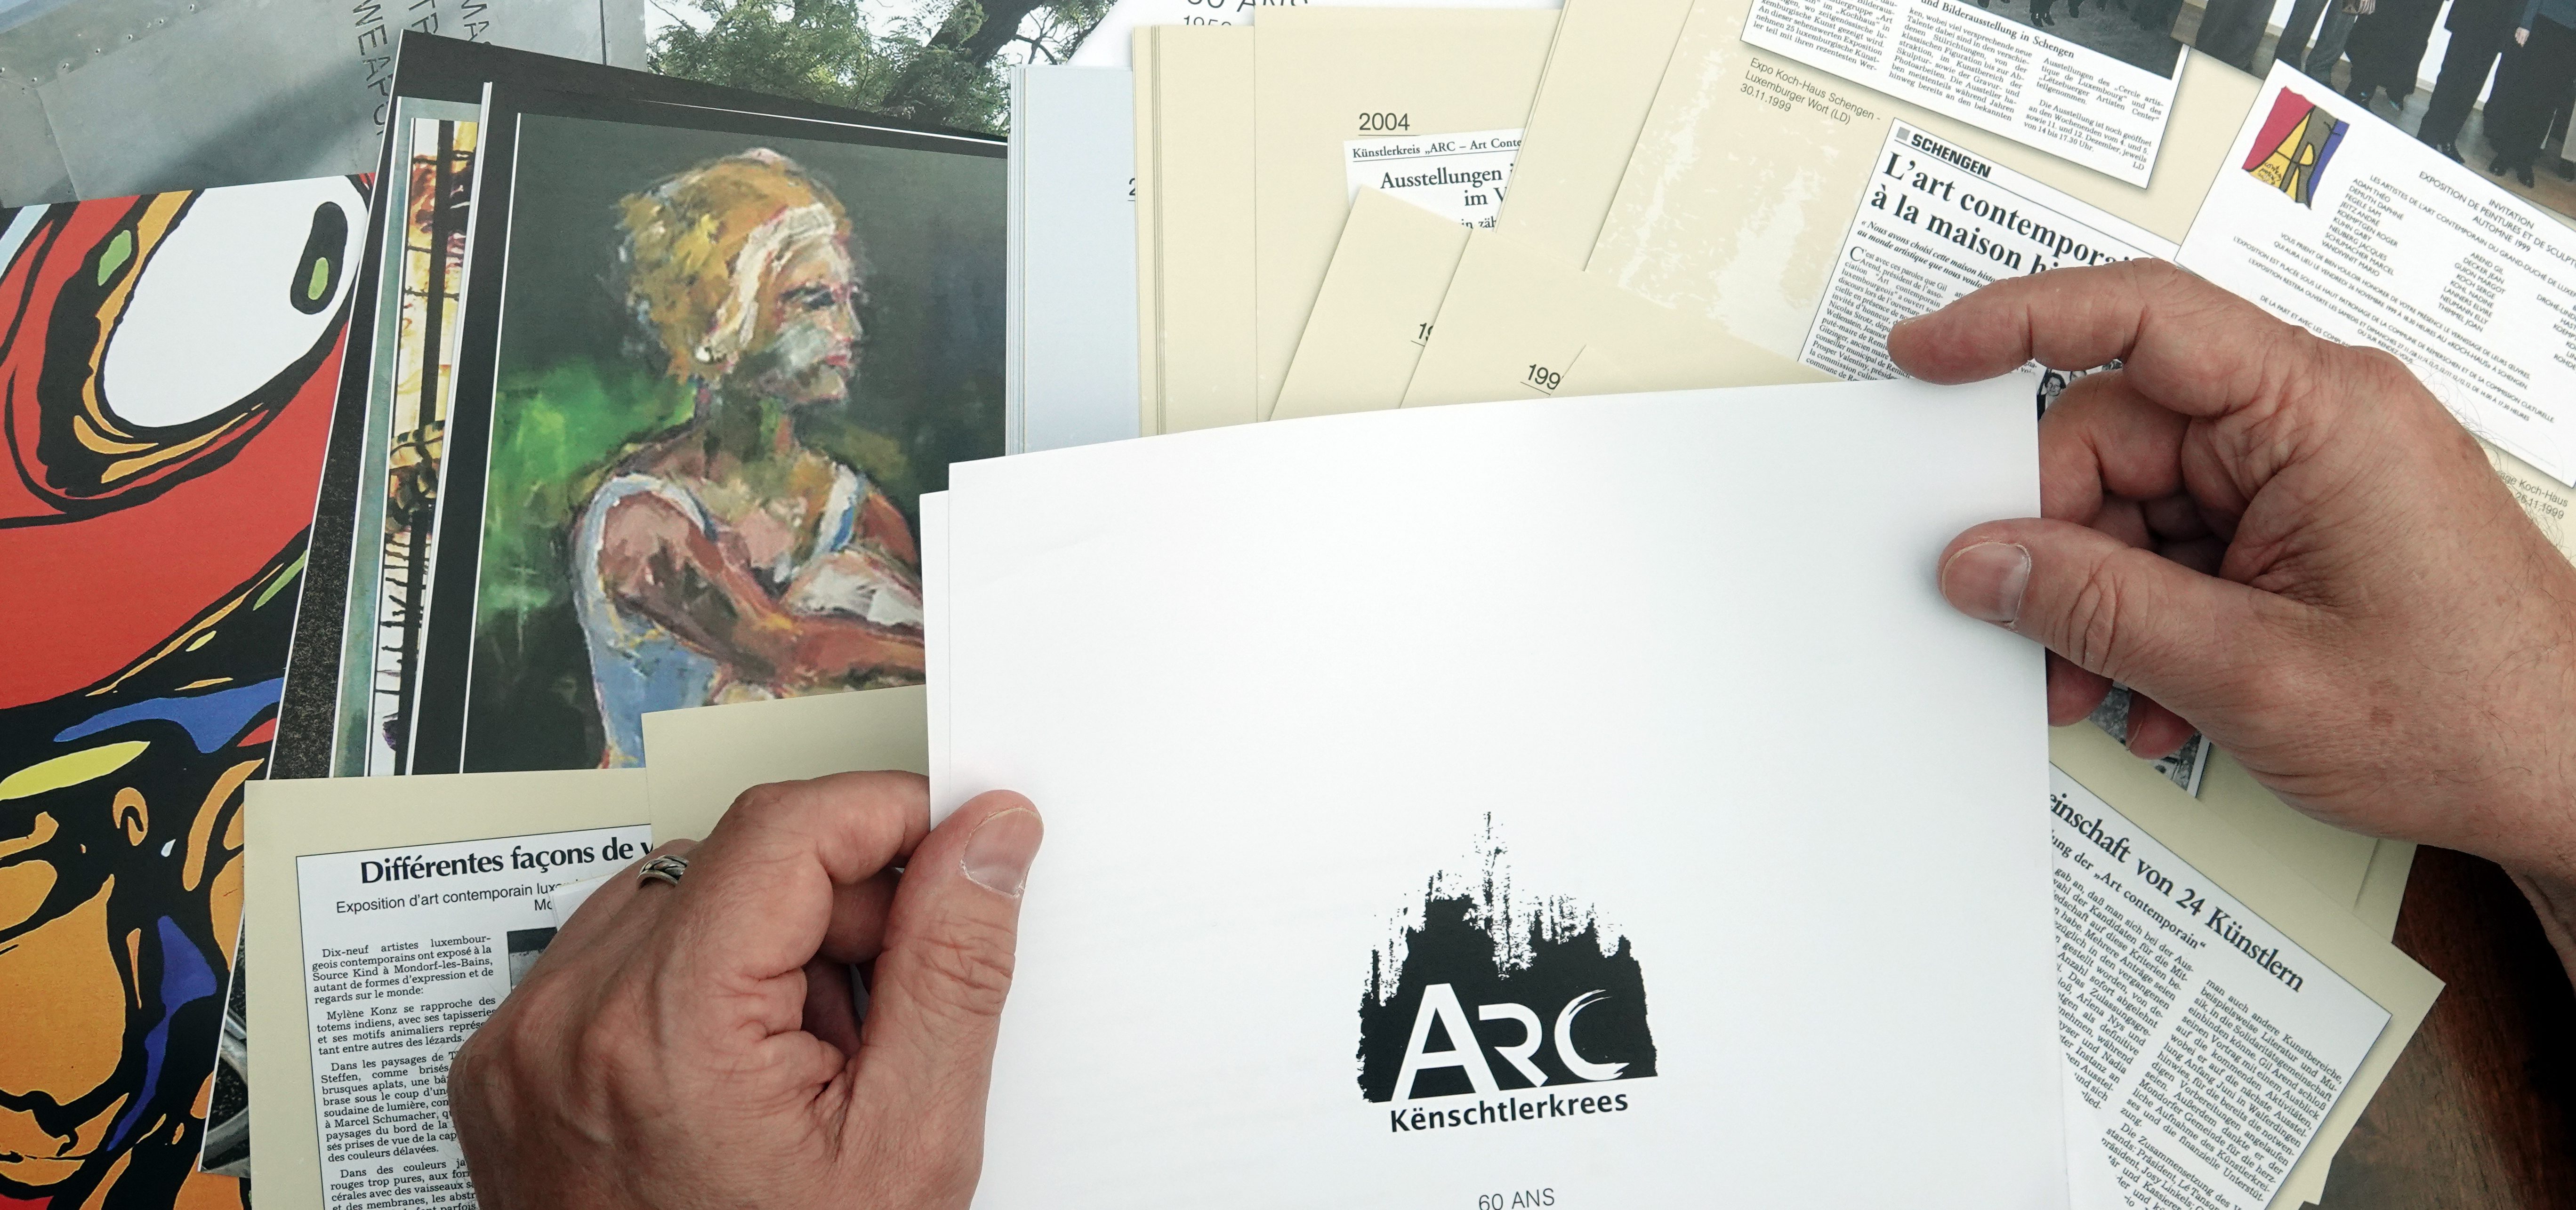 60 Jahre Farben, Formen, Freundschaft: Künstlerkreis ARC feiert Geburtstag